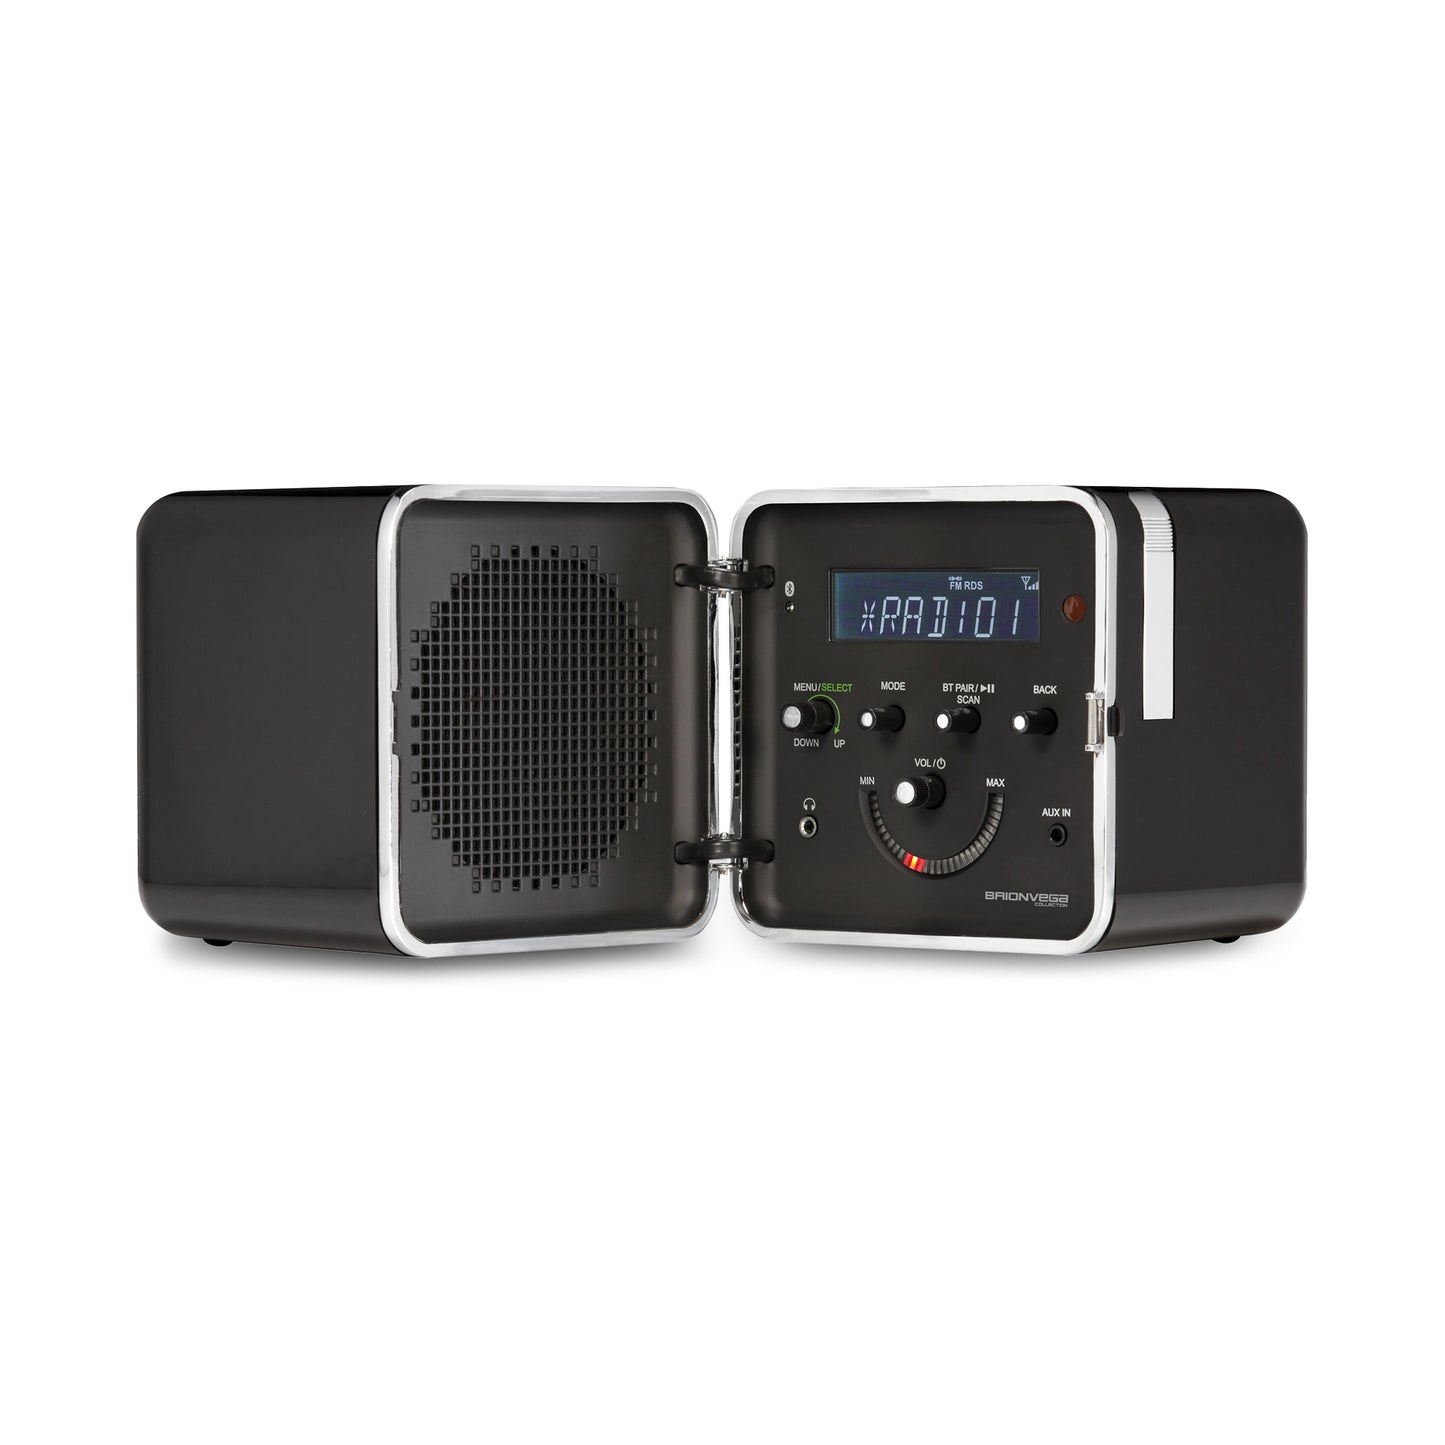 BrionVega Radio Cube